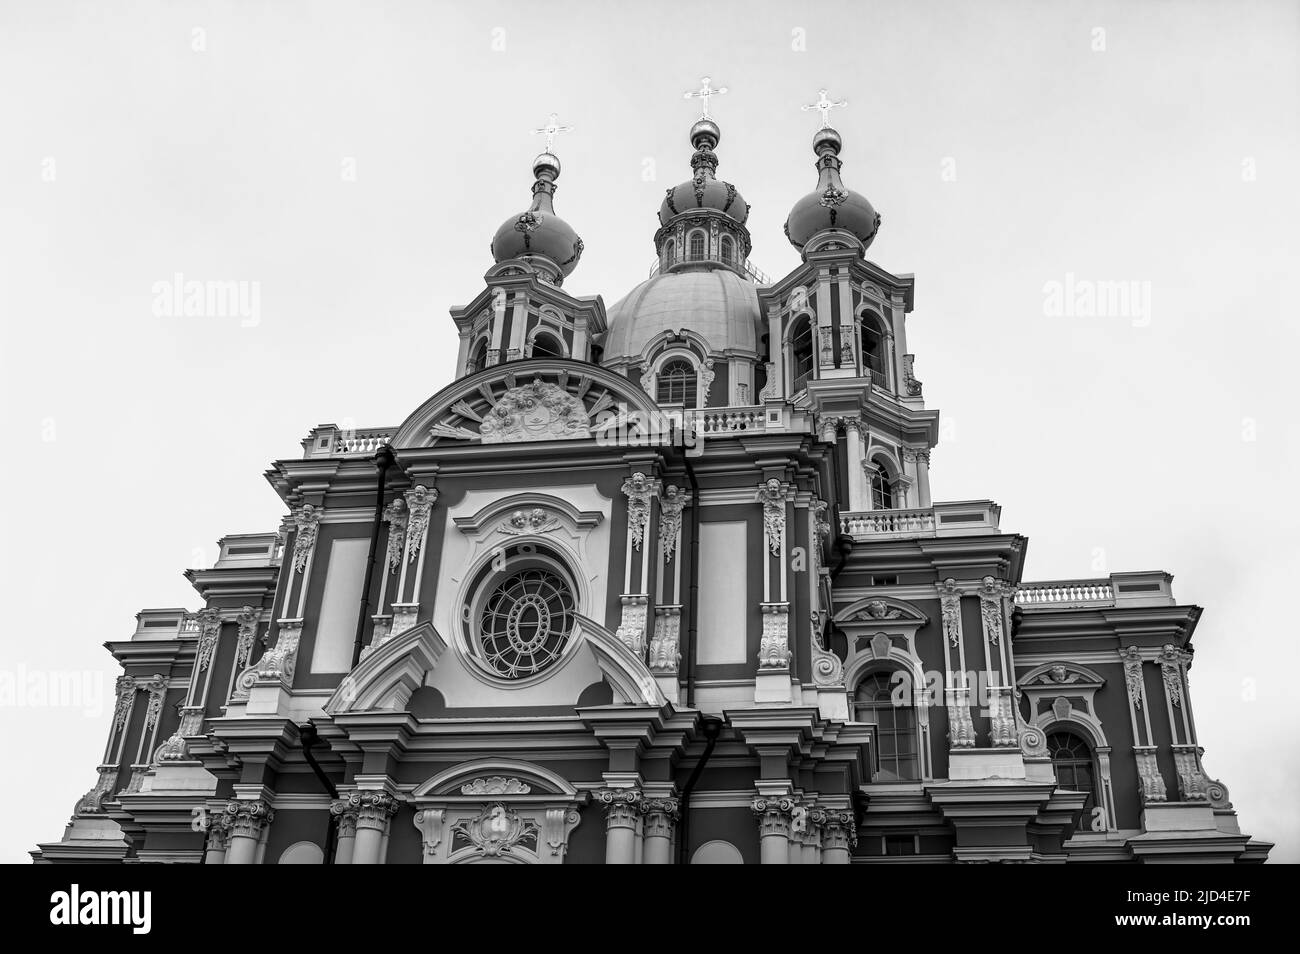 Couvent de Smolny de la Résurrection contre ciel nuageux. Saint-Pétersbourg, Russie. Vue vers le haut. Noir et blanc. Banque D'Images